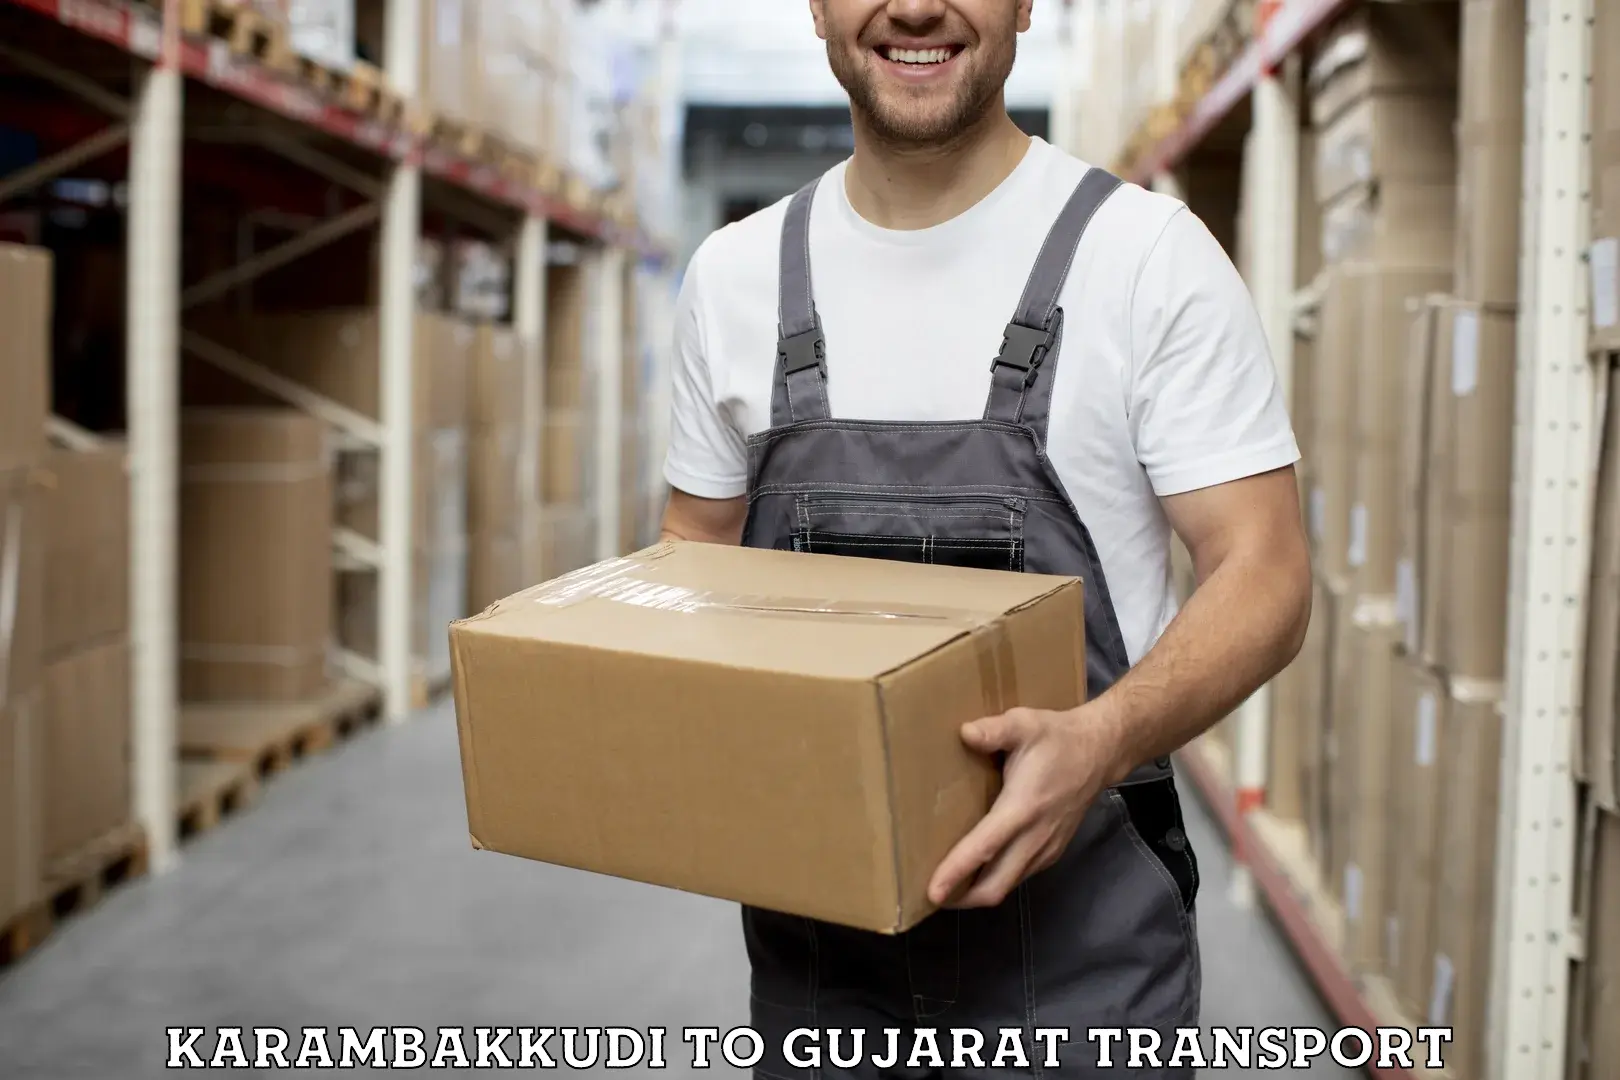 Two wheeler parcel service Karambakkudi to IIIT Surat